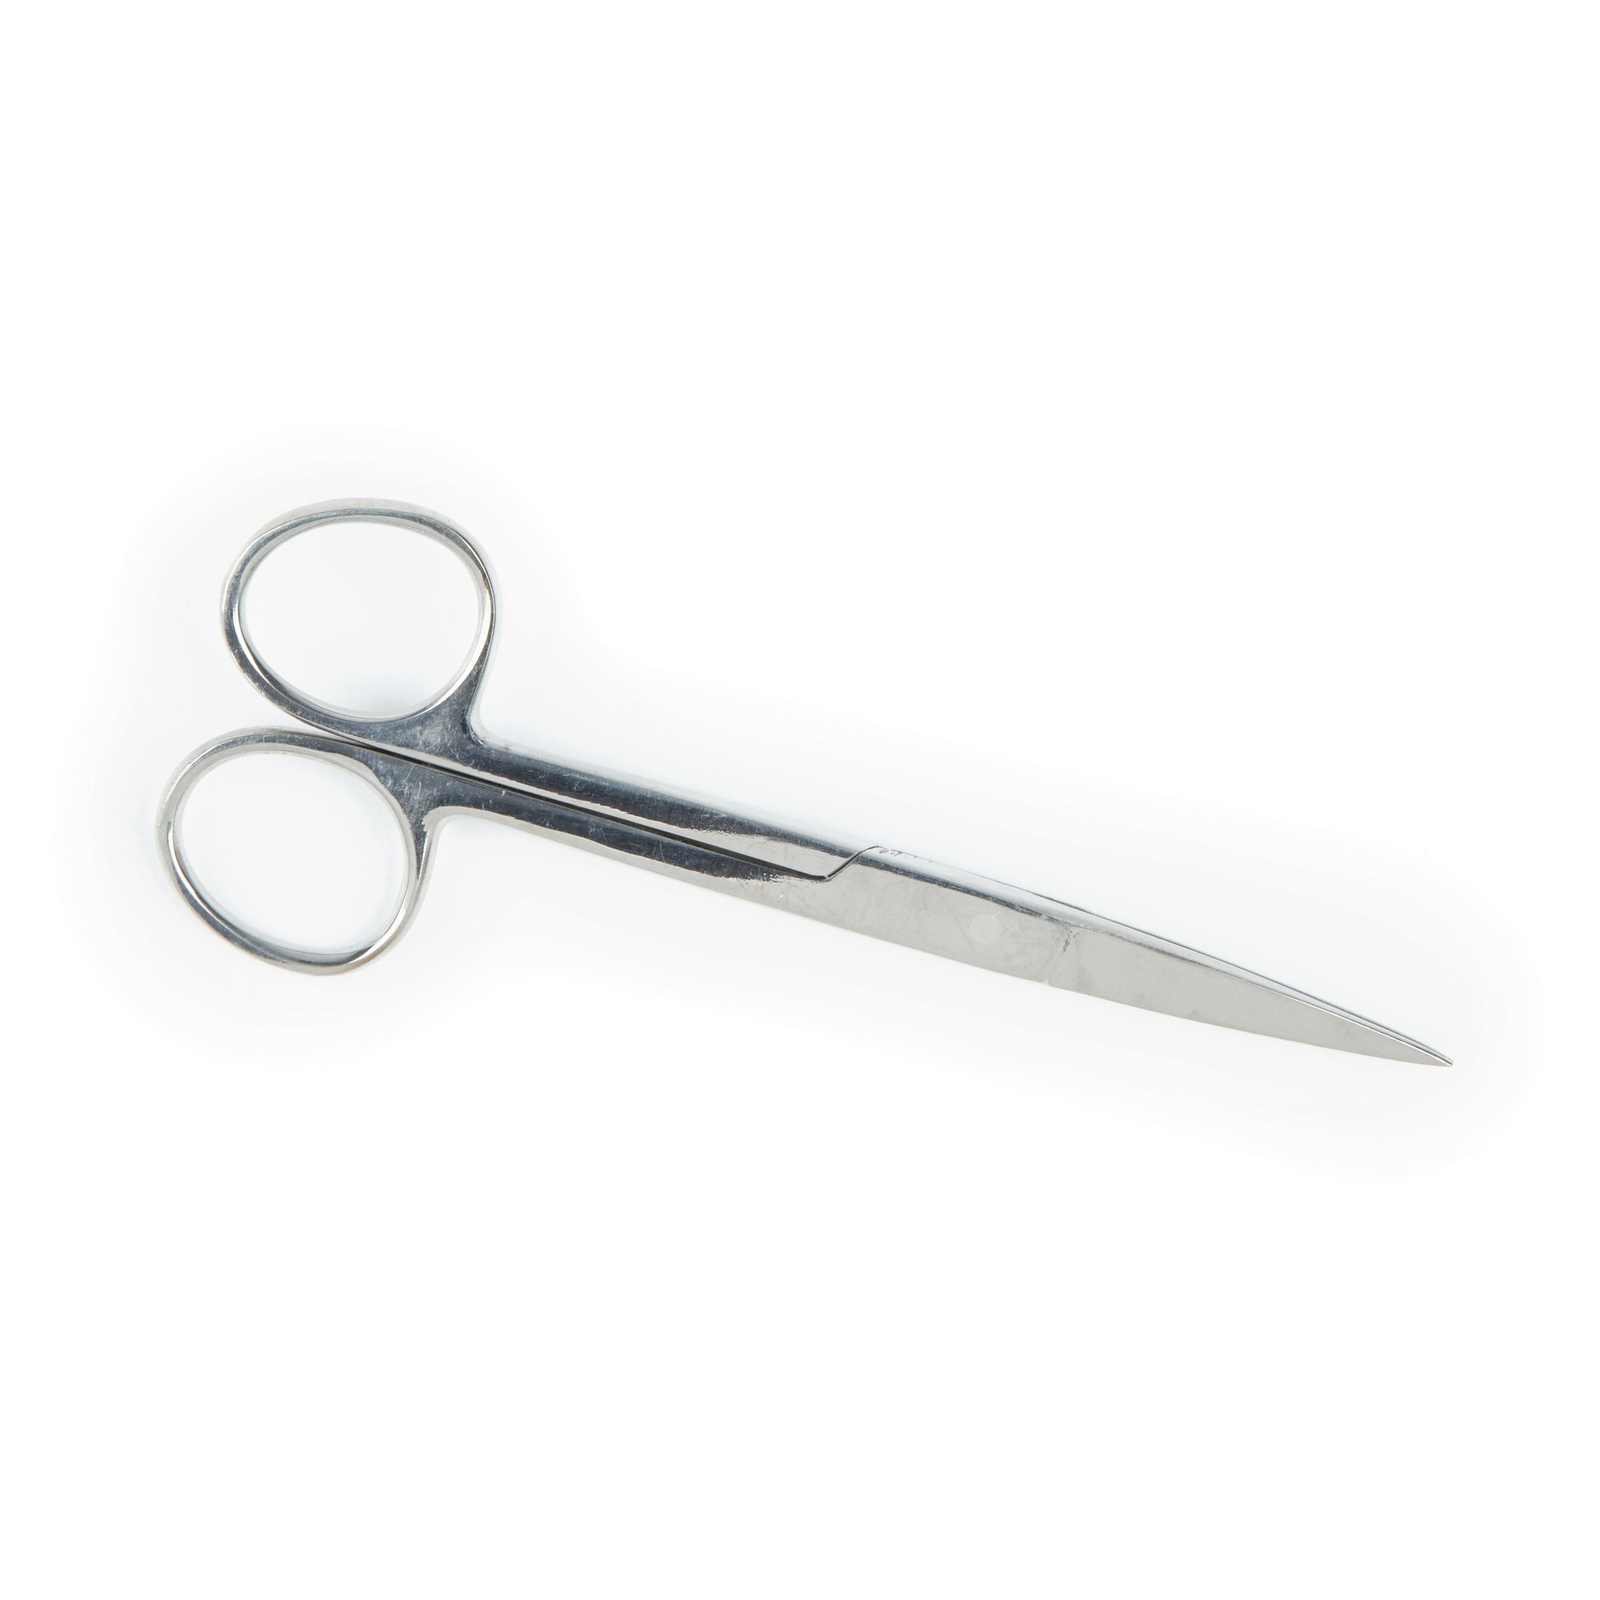 Scissors - Sharp/Sharp